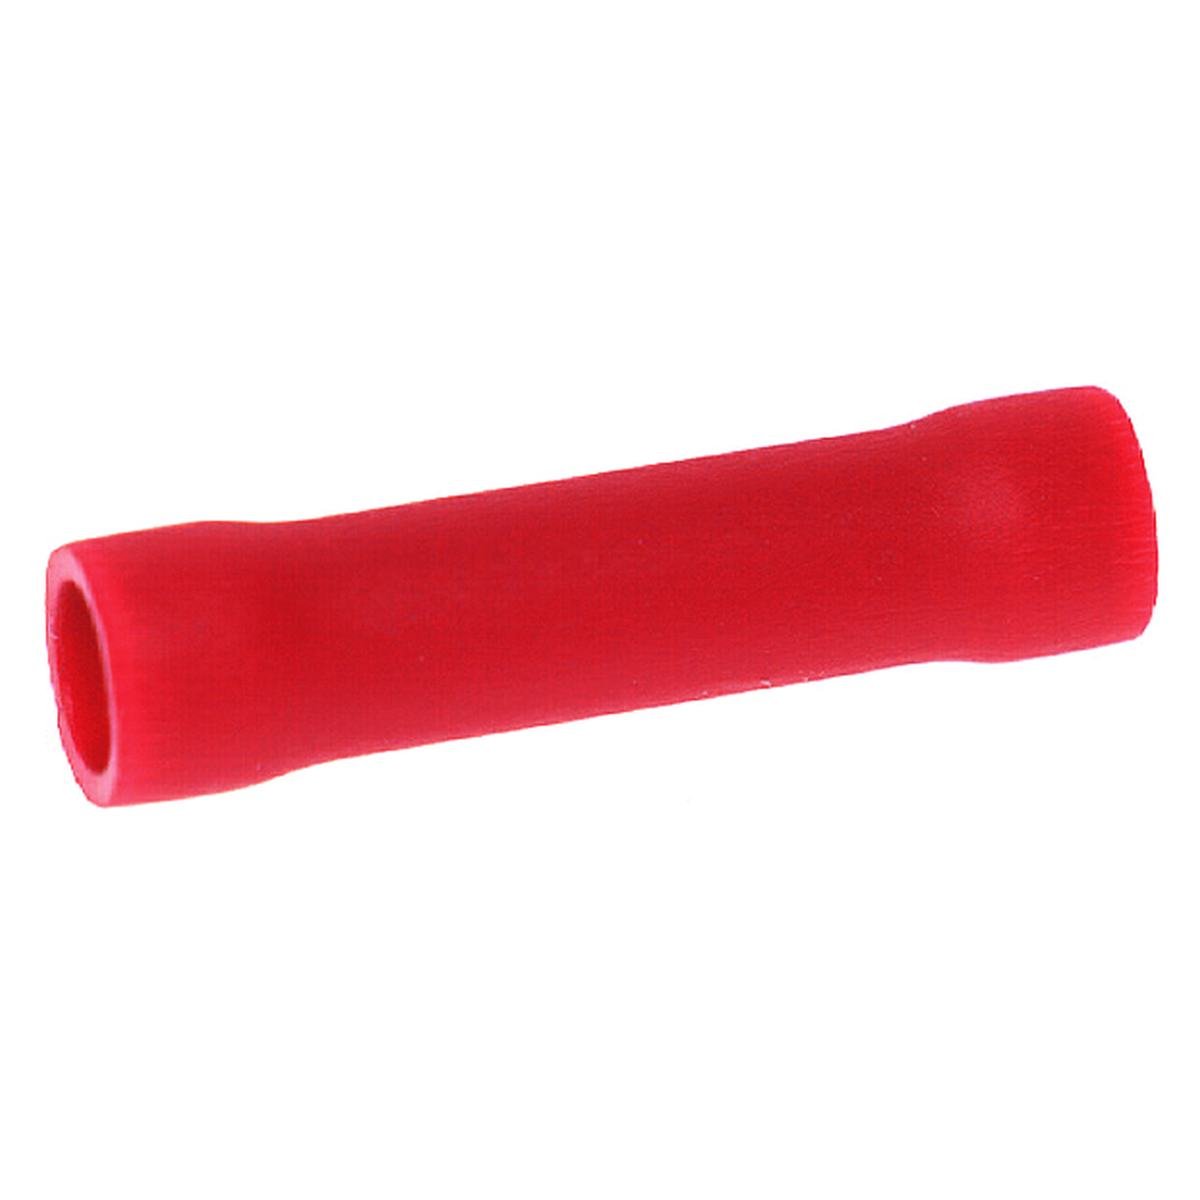 Klemmemuffe 0,5 - 1,5 mm² rød pose med 100 stk.